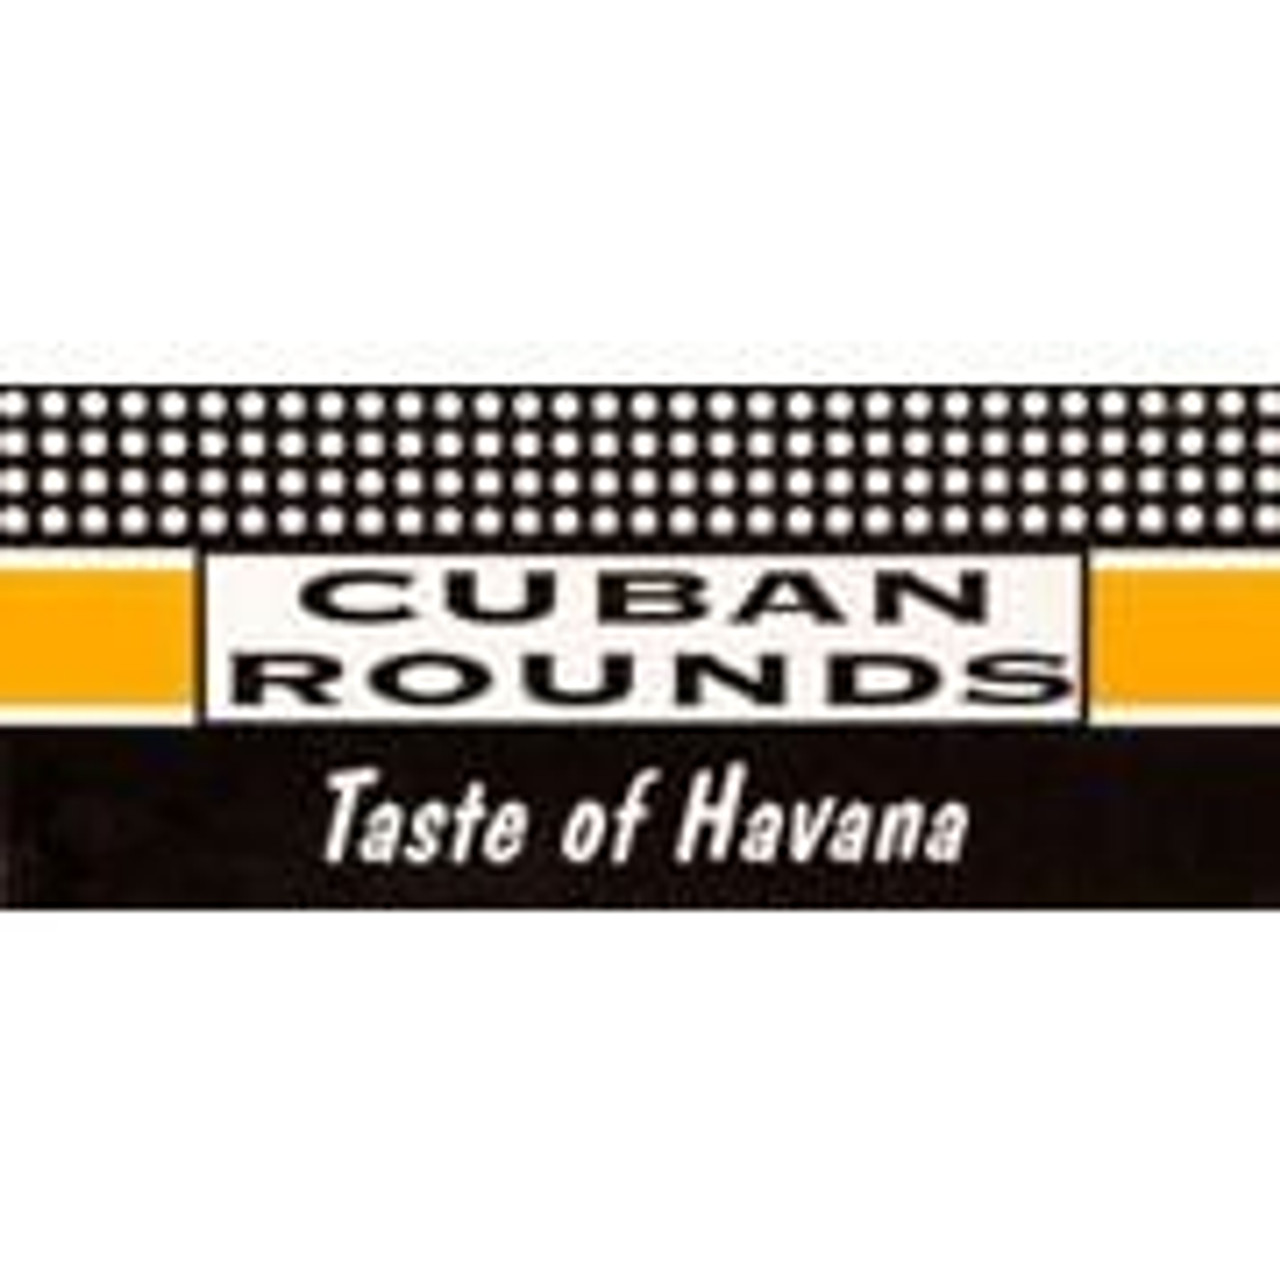 Cuban Rounds Logo